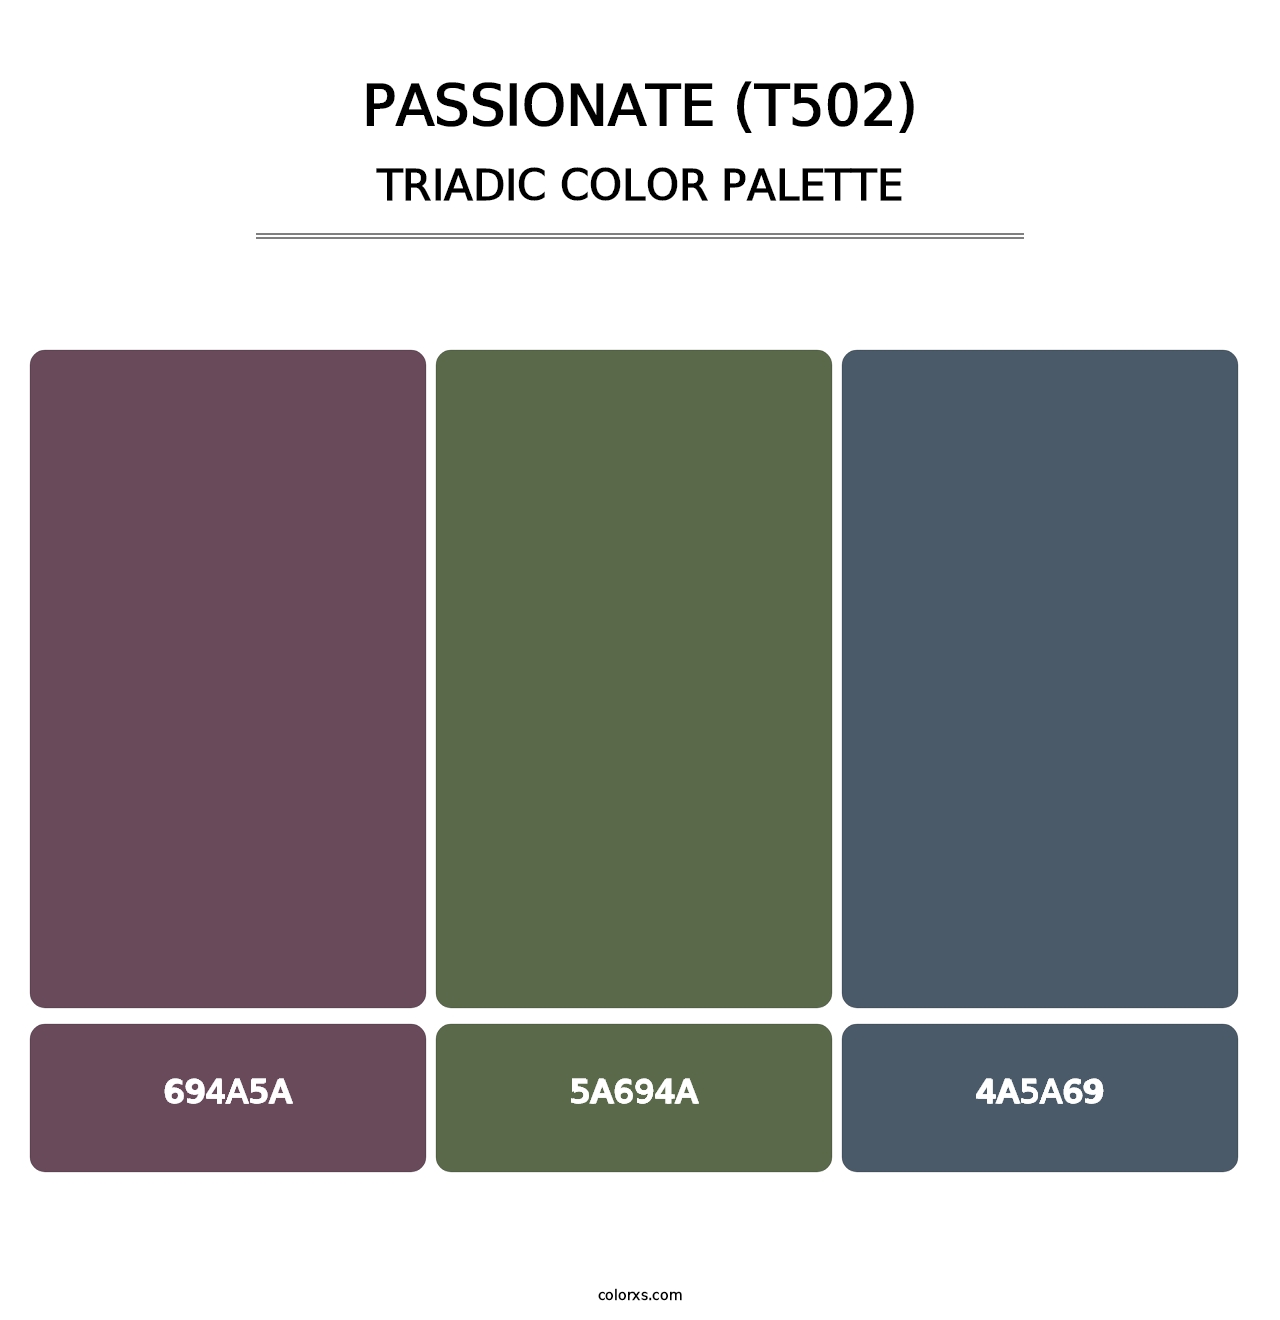 Passionate (T502) - Triadic Color Palette